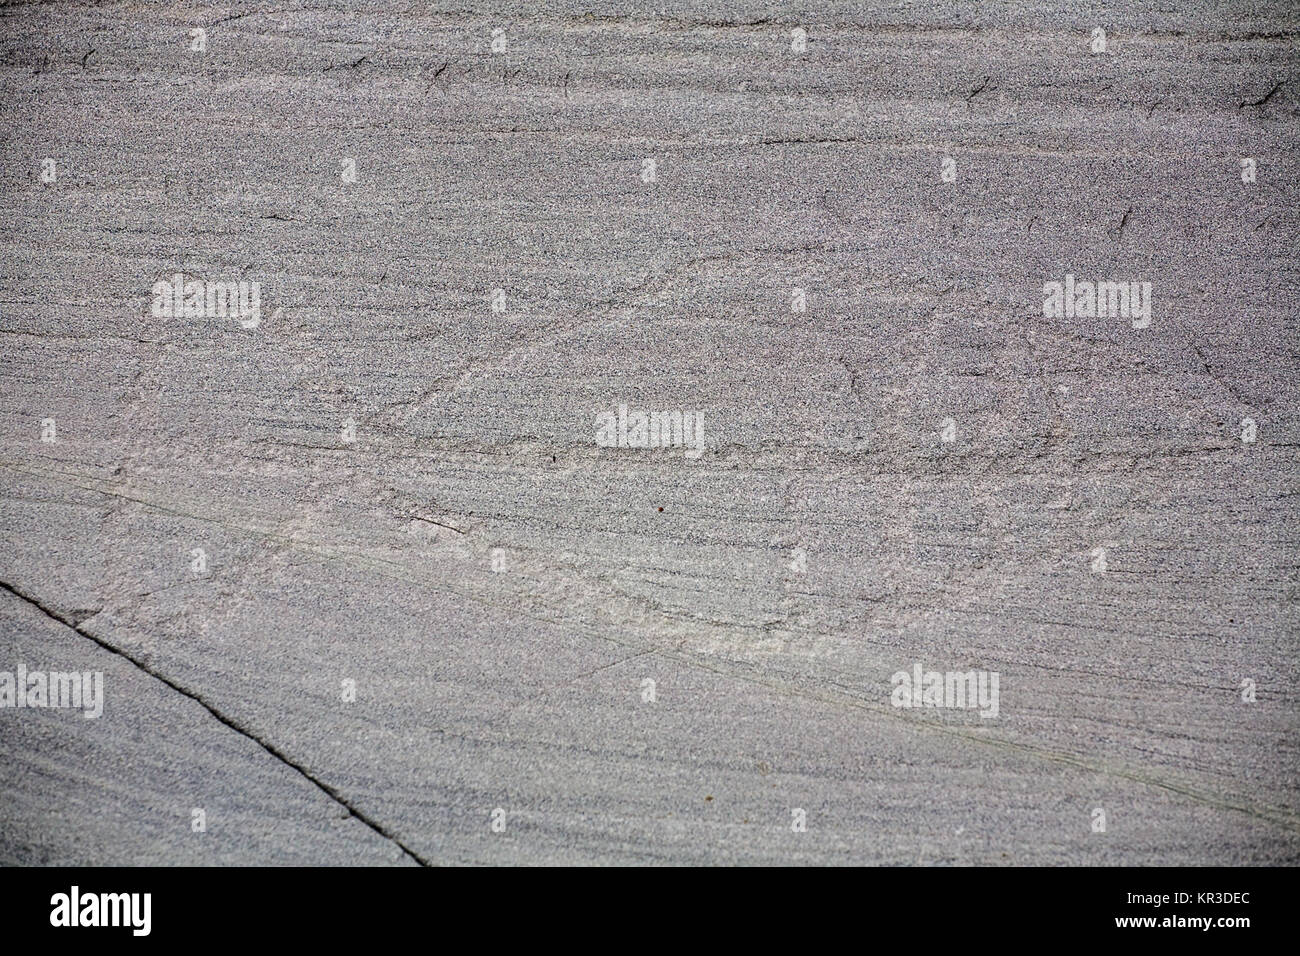 La sculpture rupestre préhistorique pétroglyphes sur surface de pierre libre, Alta, Norvège Banque D'Images